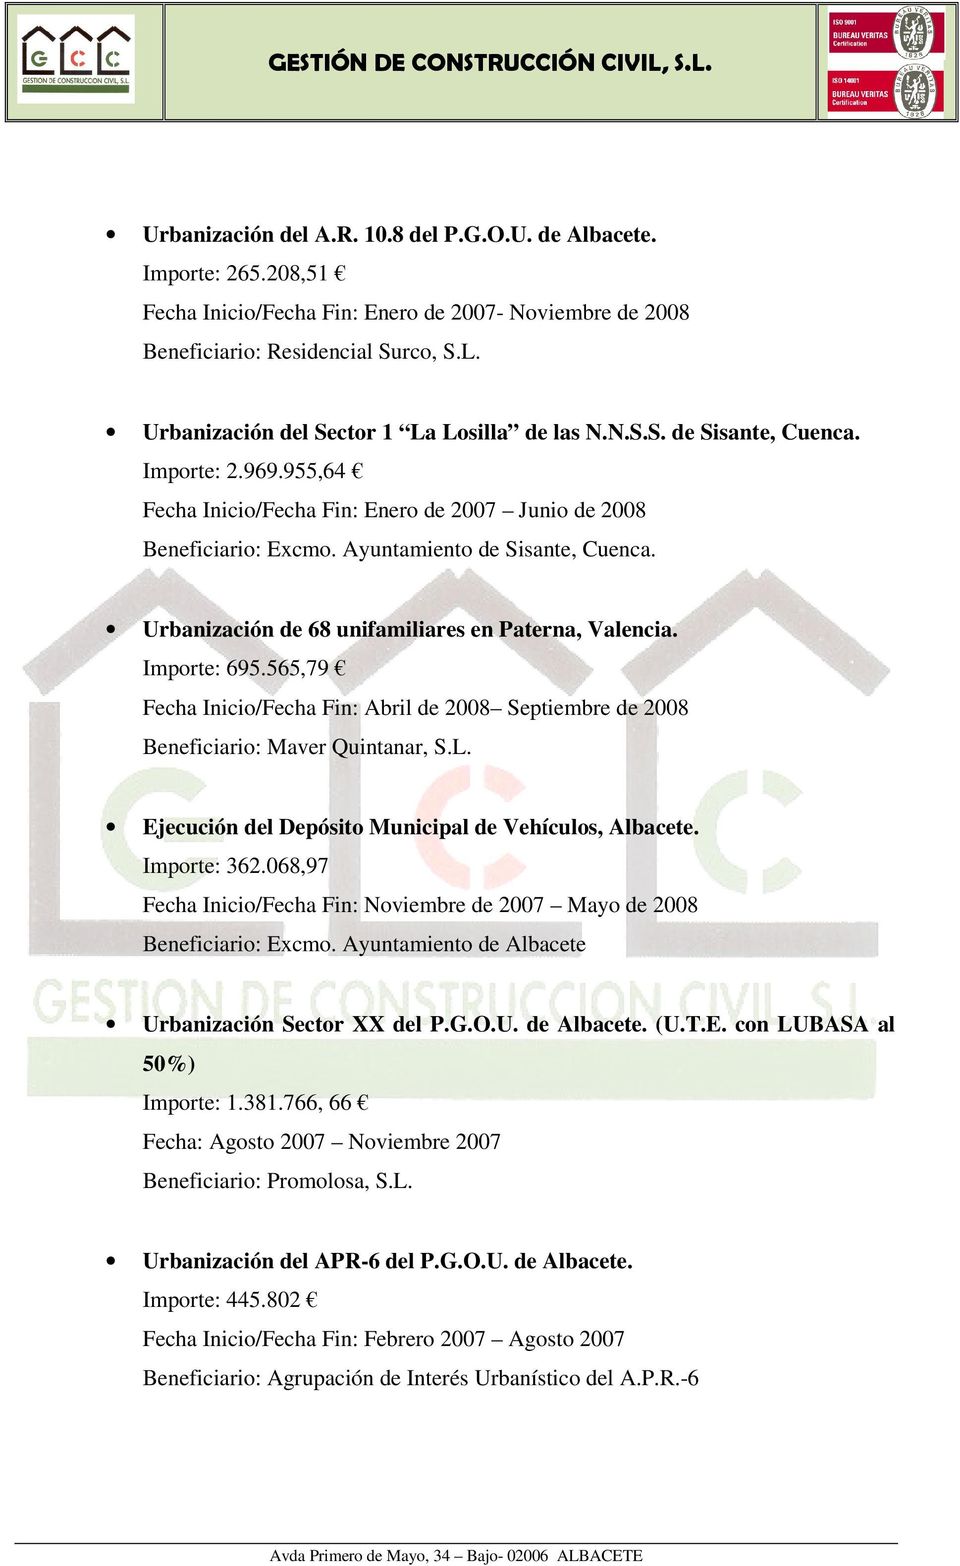 Urbanización de 68 unifamiliares en Paterna, Valencia. Importe: 695.565,79 Fecha Inicio/Fecha Fin: Abril de 2008 Septiembre de 2008 Beneficiario: Maver Quintanar, S.L.